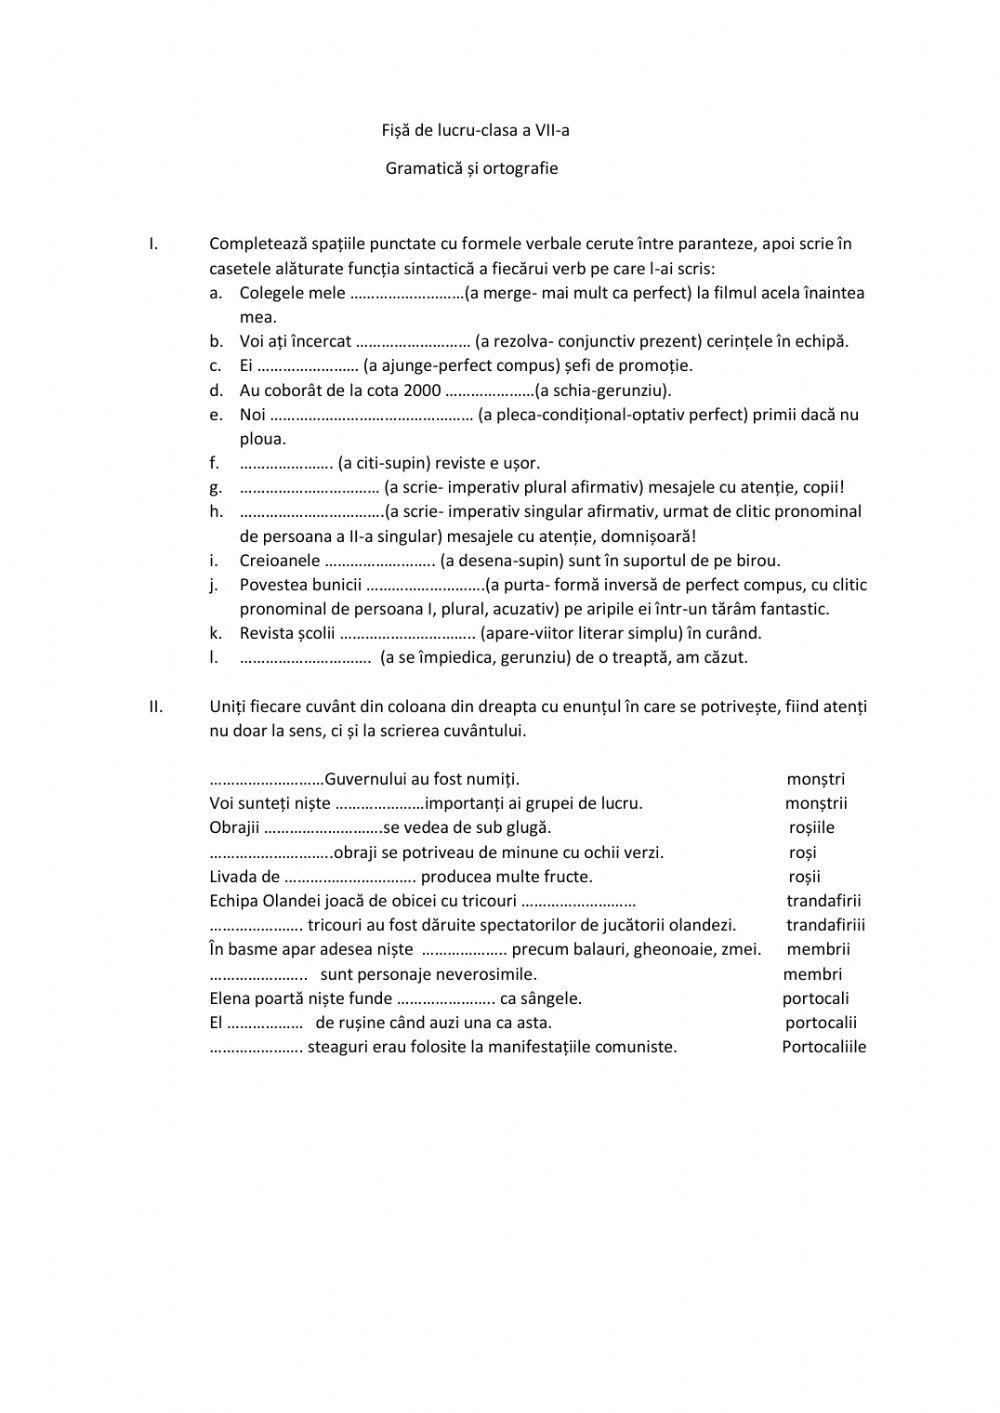 Verbul, ortografie worksheet | Live Worksheets